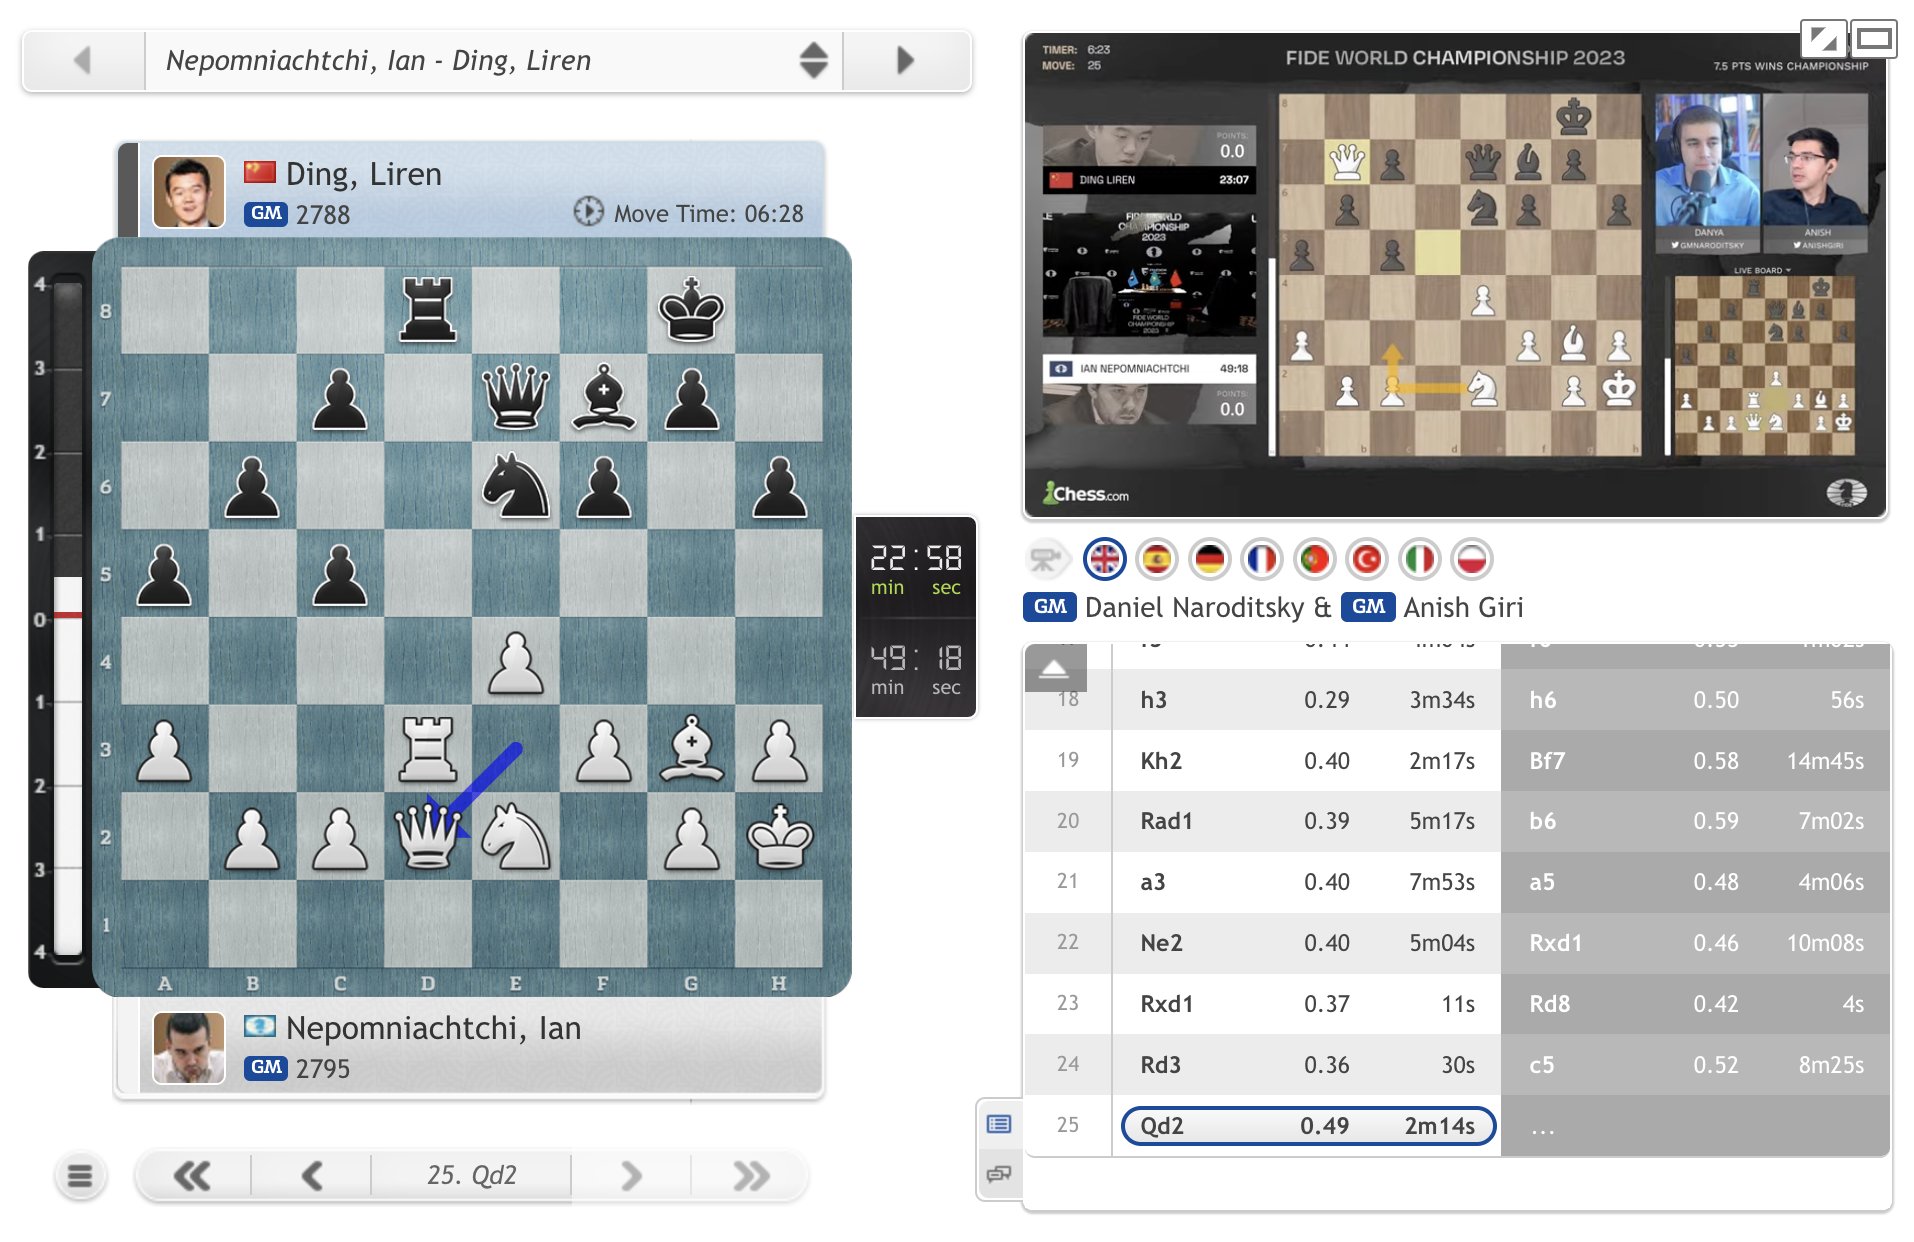 chess24 - Live Analysis